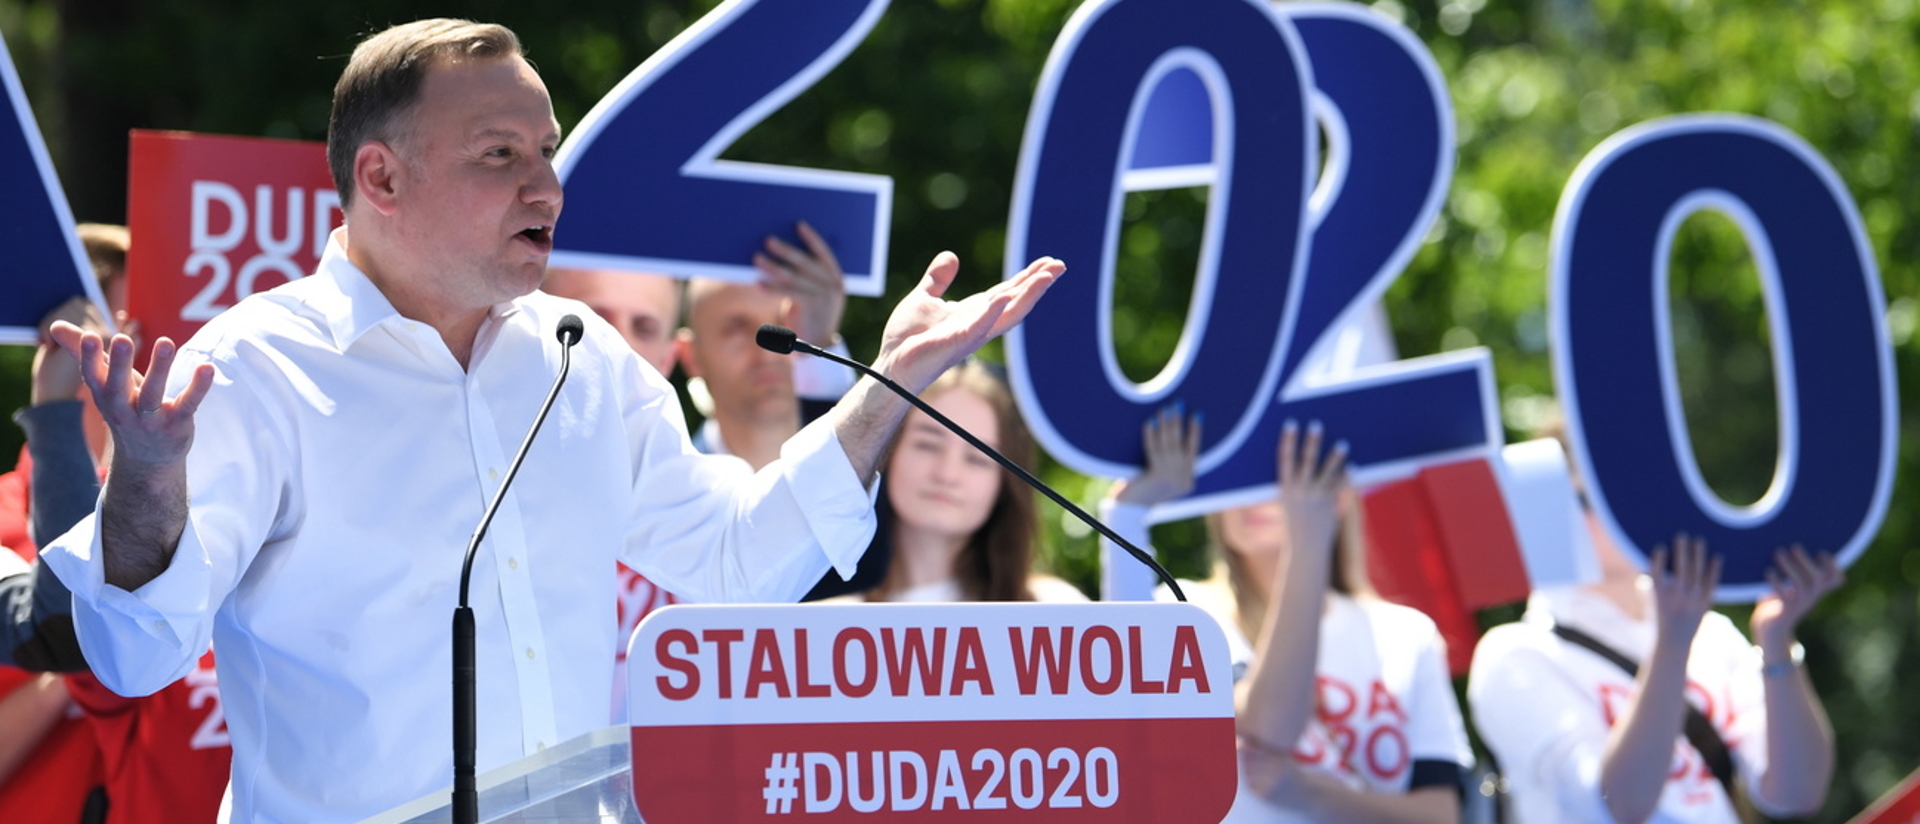 Polens Präsident Andrzej Duda im Wahlkampf 2020.